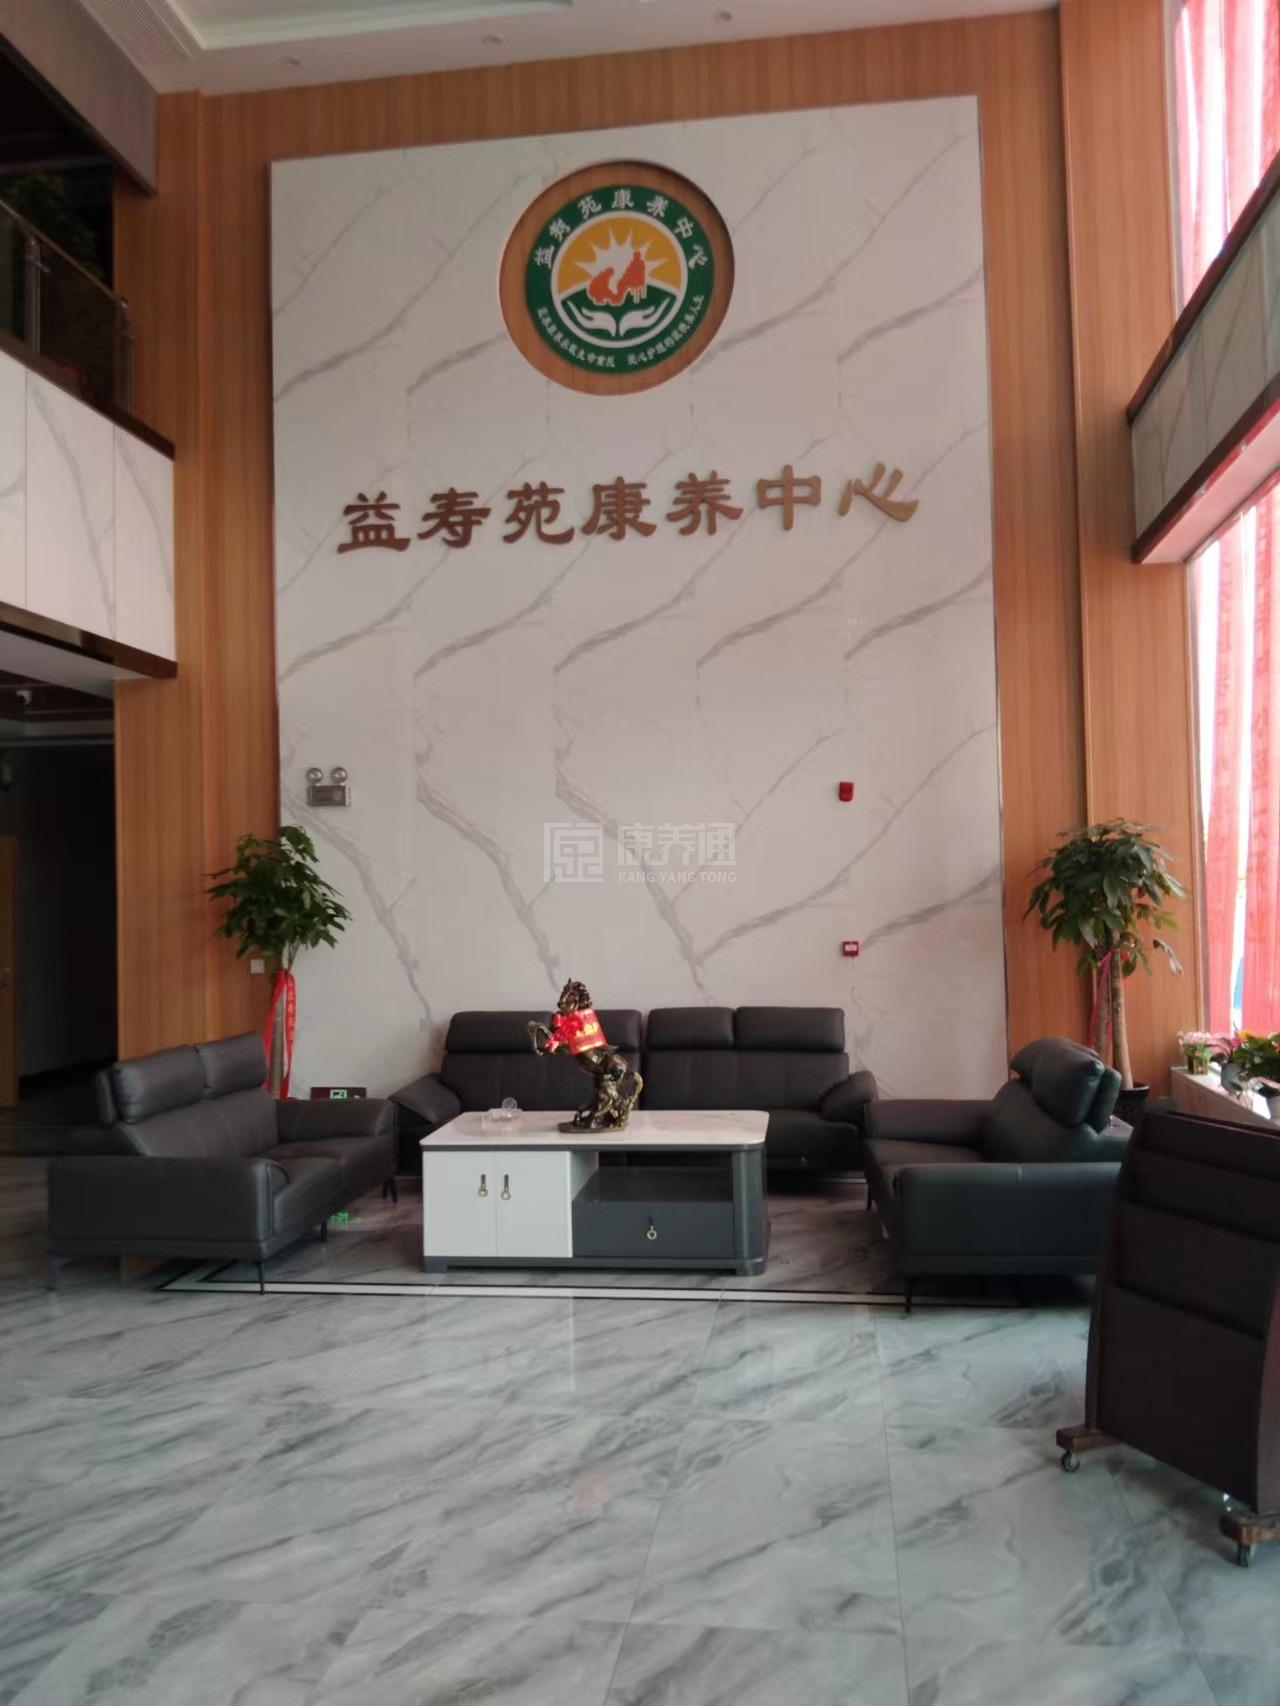 双峰县益寿苑康养中心环境图-阳台